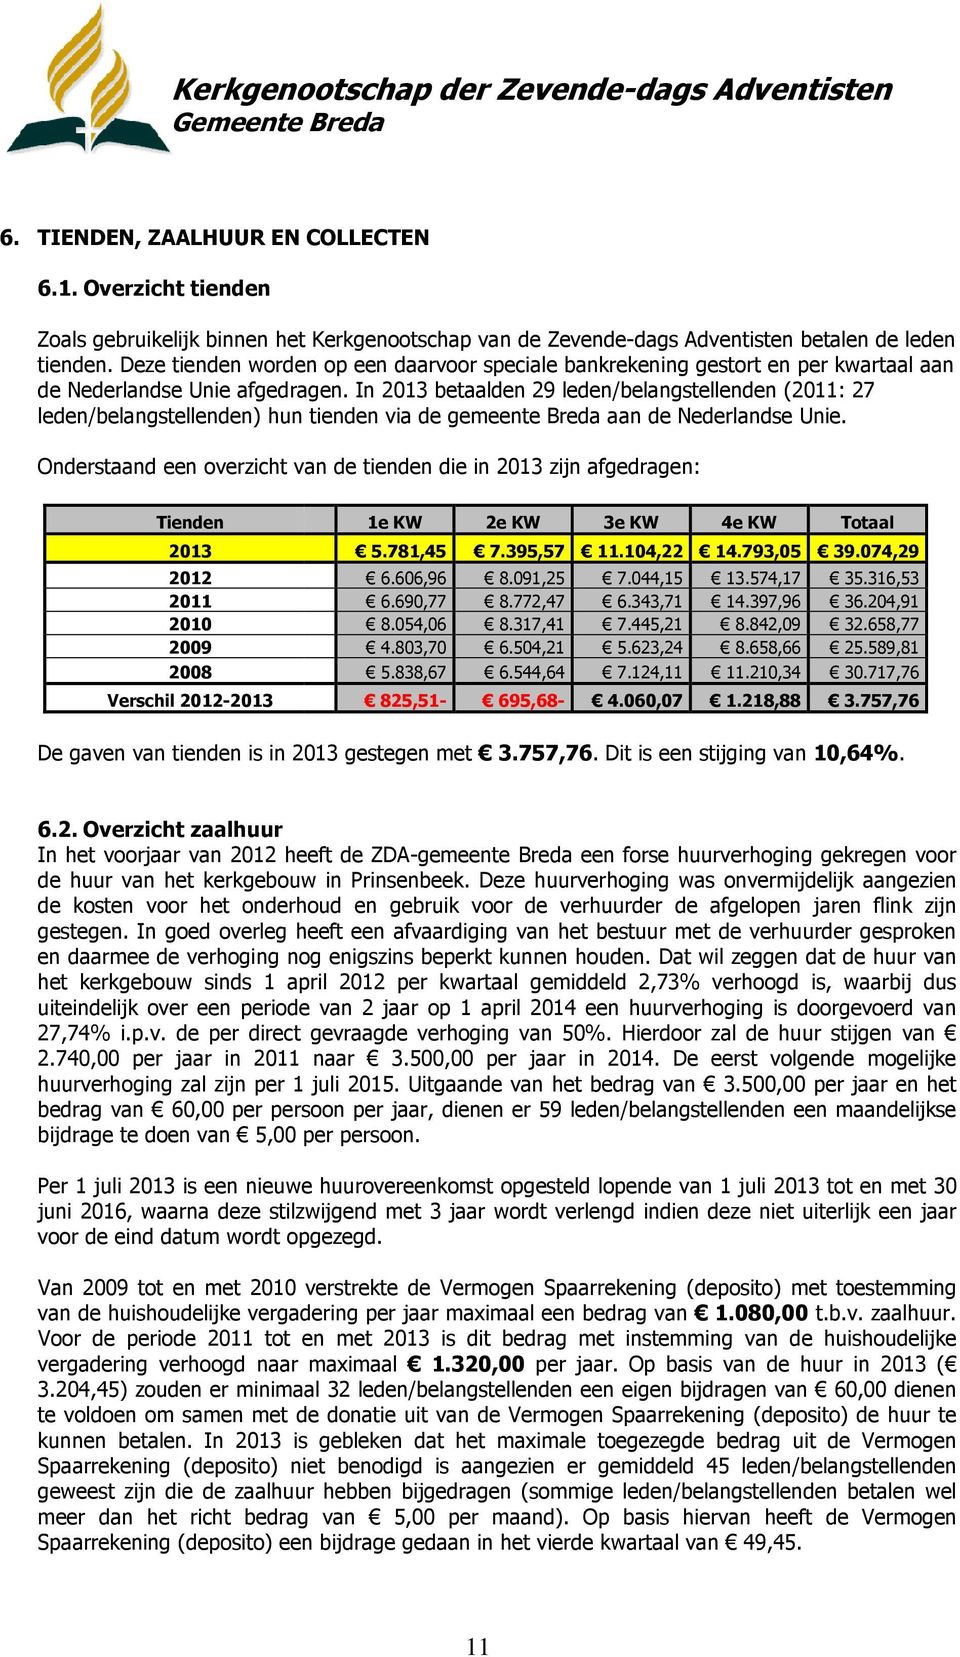 In 2013 betaalden 29 leden/belangstellenden (2011: 27 leden/belangstellenden) hun tienden via de gemeente Breda aan de Nederlandse Unie.